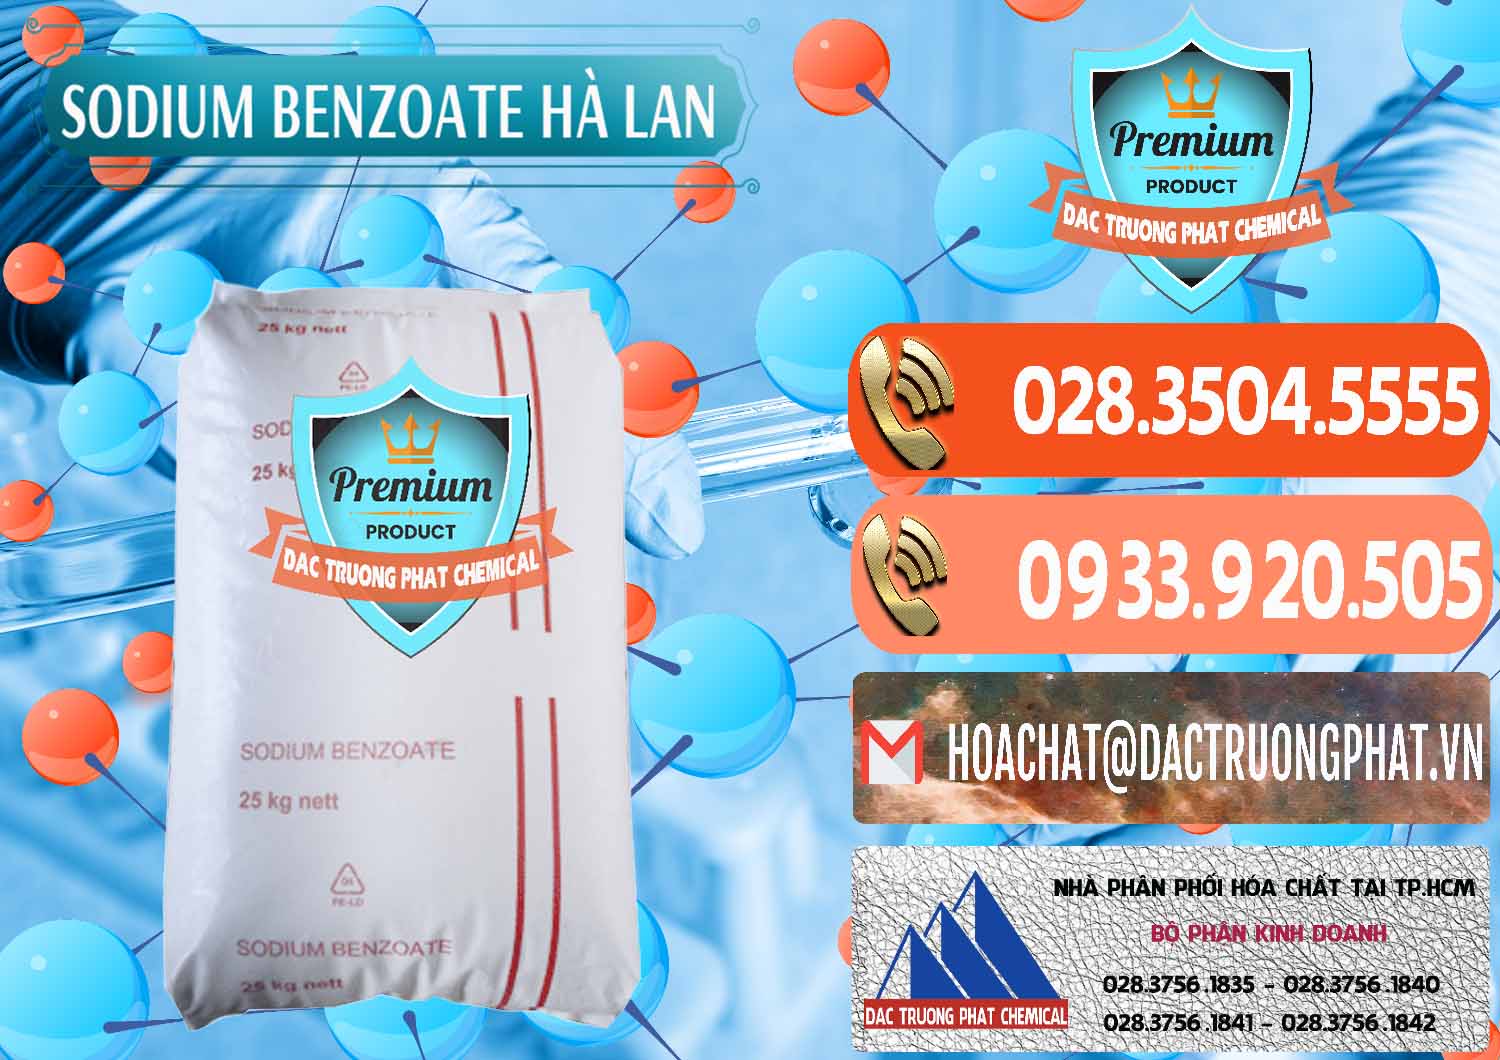 Cty bán ( cung ứng ) Sodium Benzoate - Mốc Bột Chữ Cam Hà Lan Netherlands - 0360 - Cty cung cấp & kinh doanh hóa chất tại TP.HCM - hoachatmientay.com